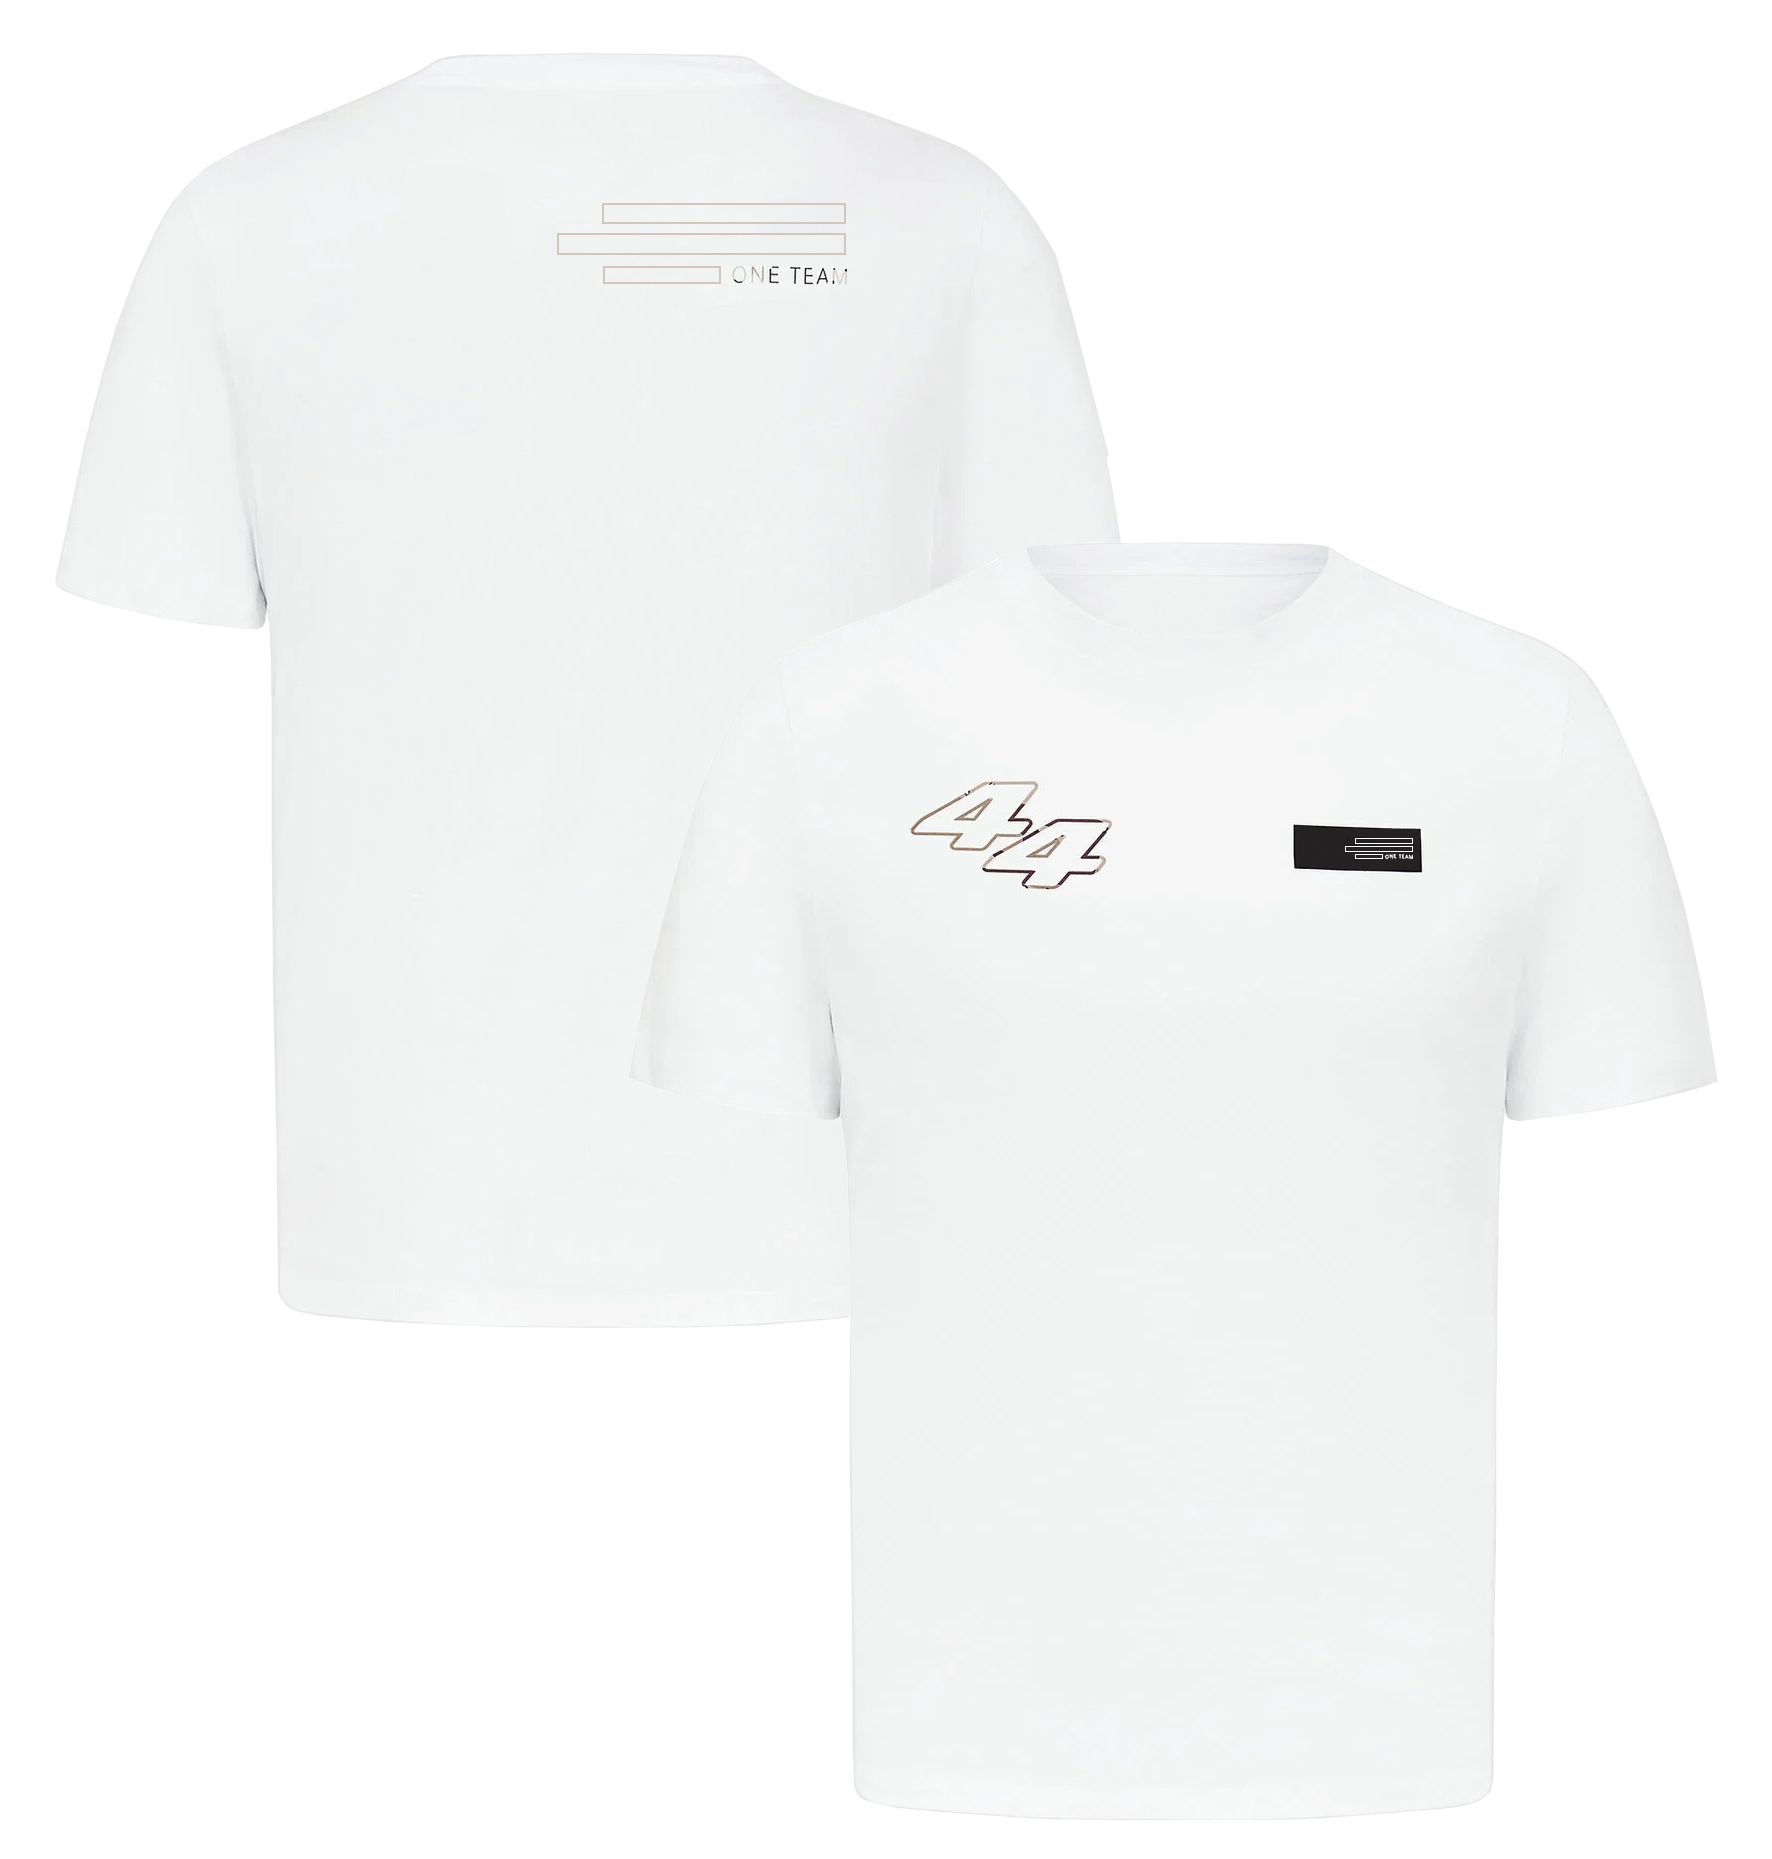 F1 44 63 드라이버 티셔츠 포뮬러 1 팀 레이싱 로고 티셔츠 남자 여성 패션 O- 넥 티셔츠 캐주얼 스포츠 티 탑 저지 플러스 사이즈